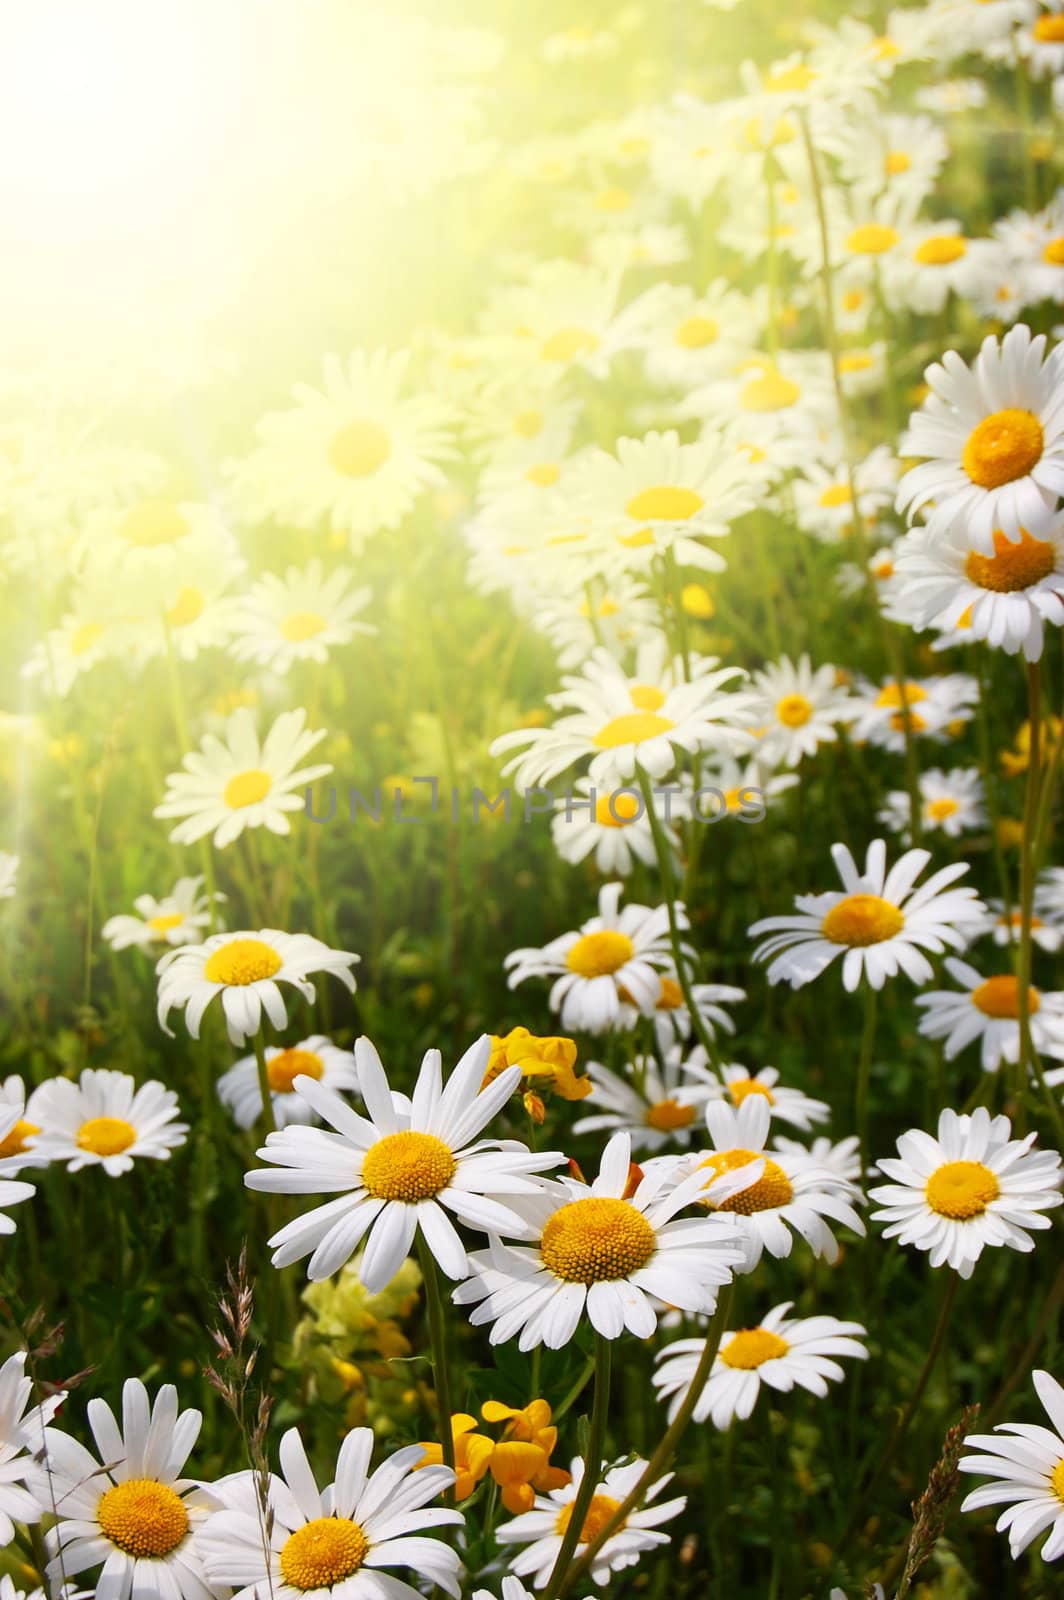 daisy flowers on a sunny summer field